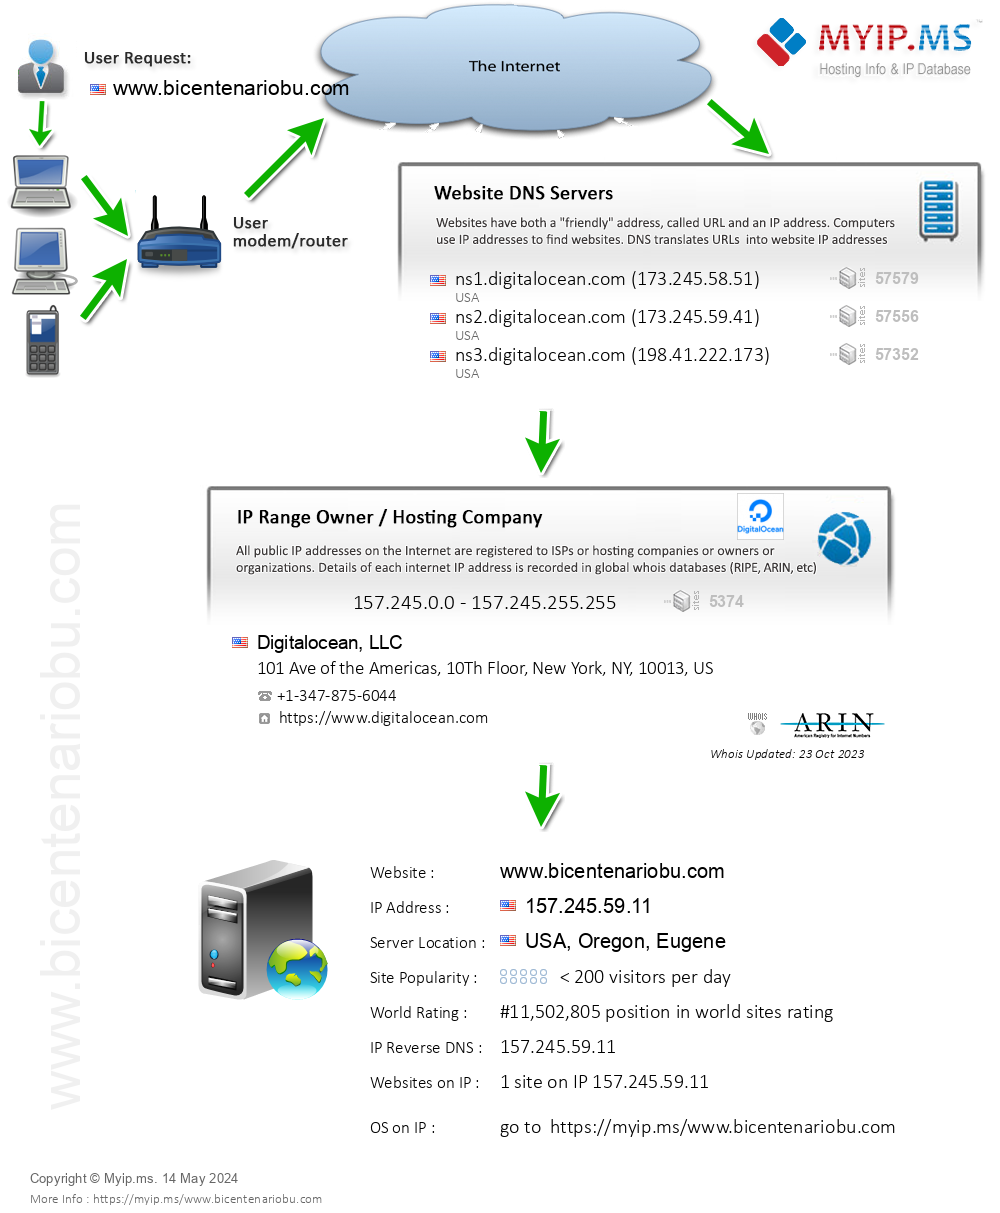 Bicentenariobu.com - Website Hosting Visual IP Diagram